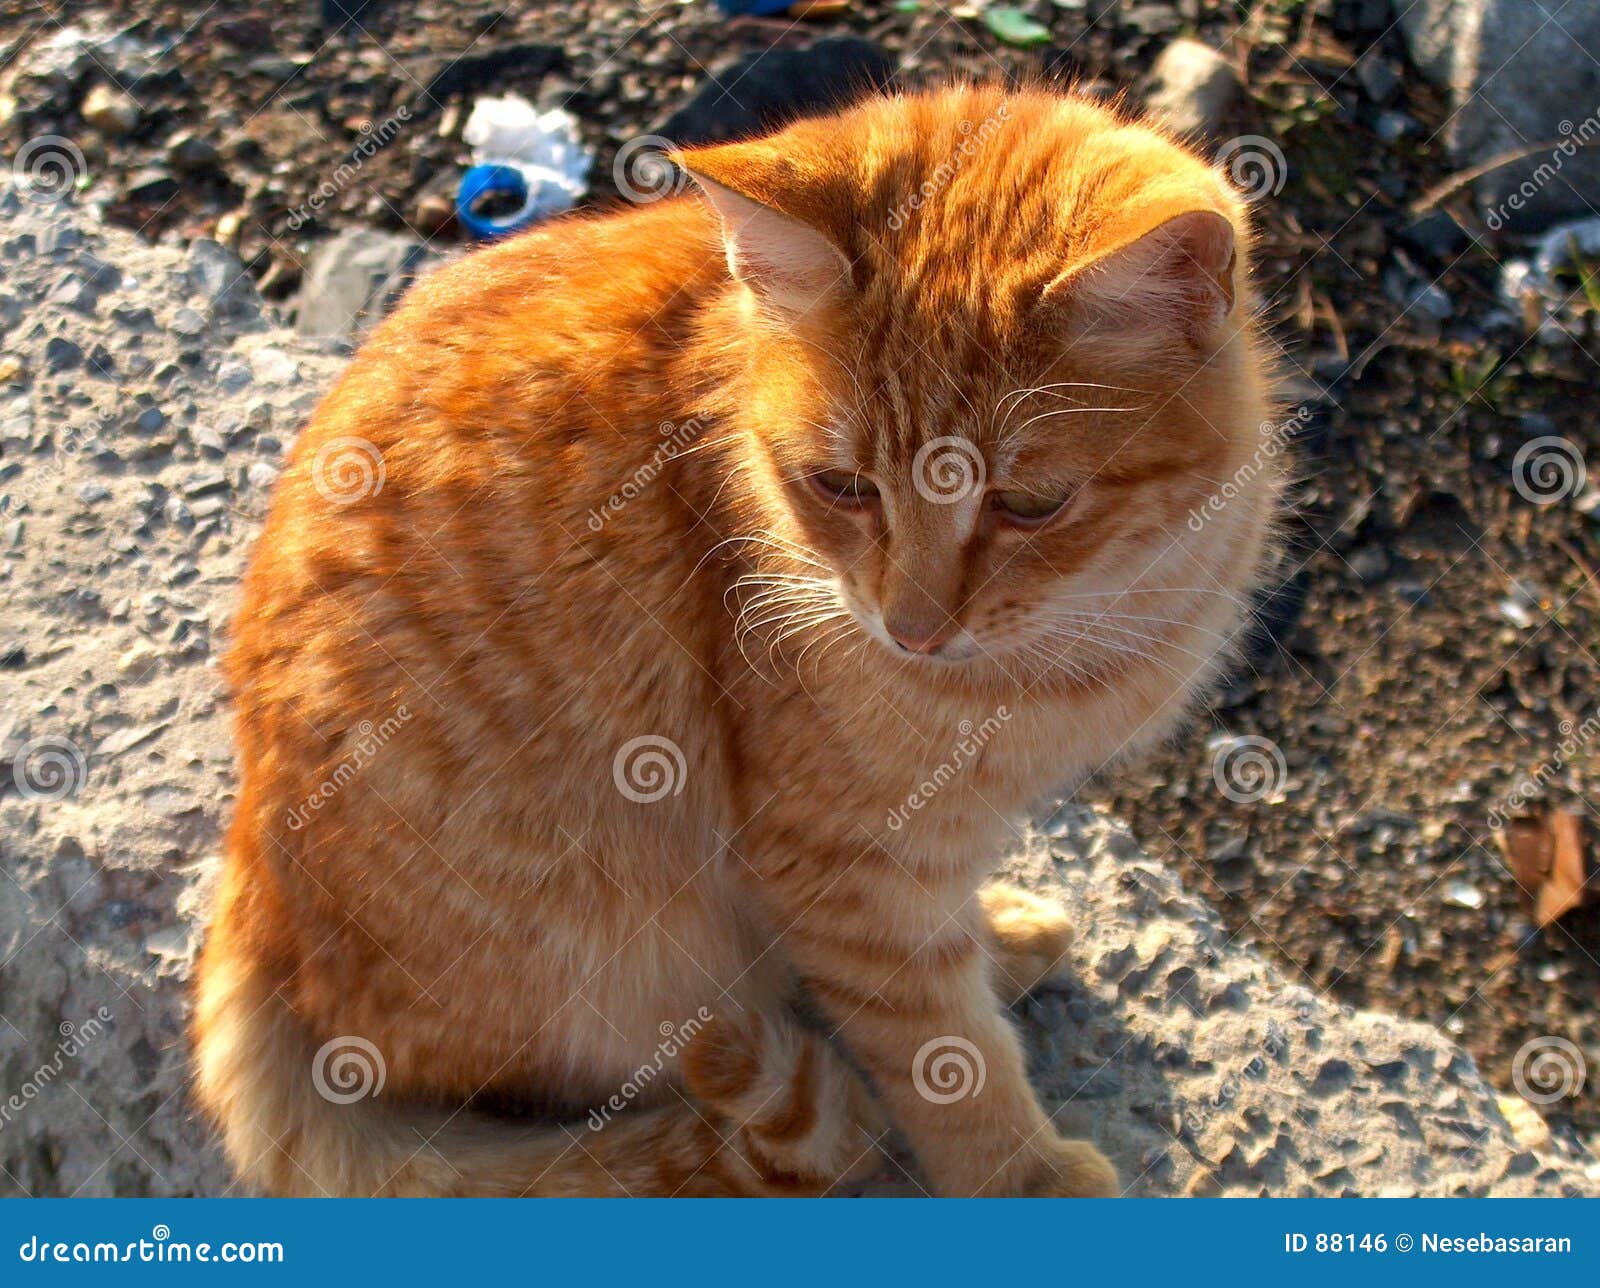 Download Funny Orange Tabby Cat Pfp Wallpaper